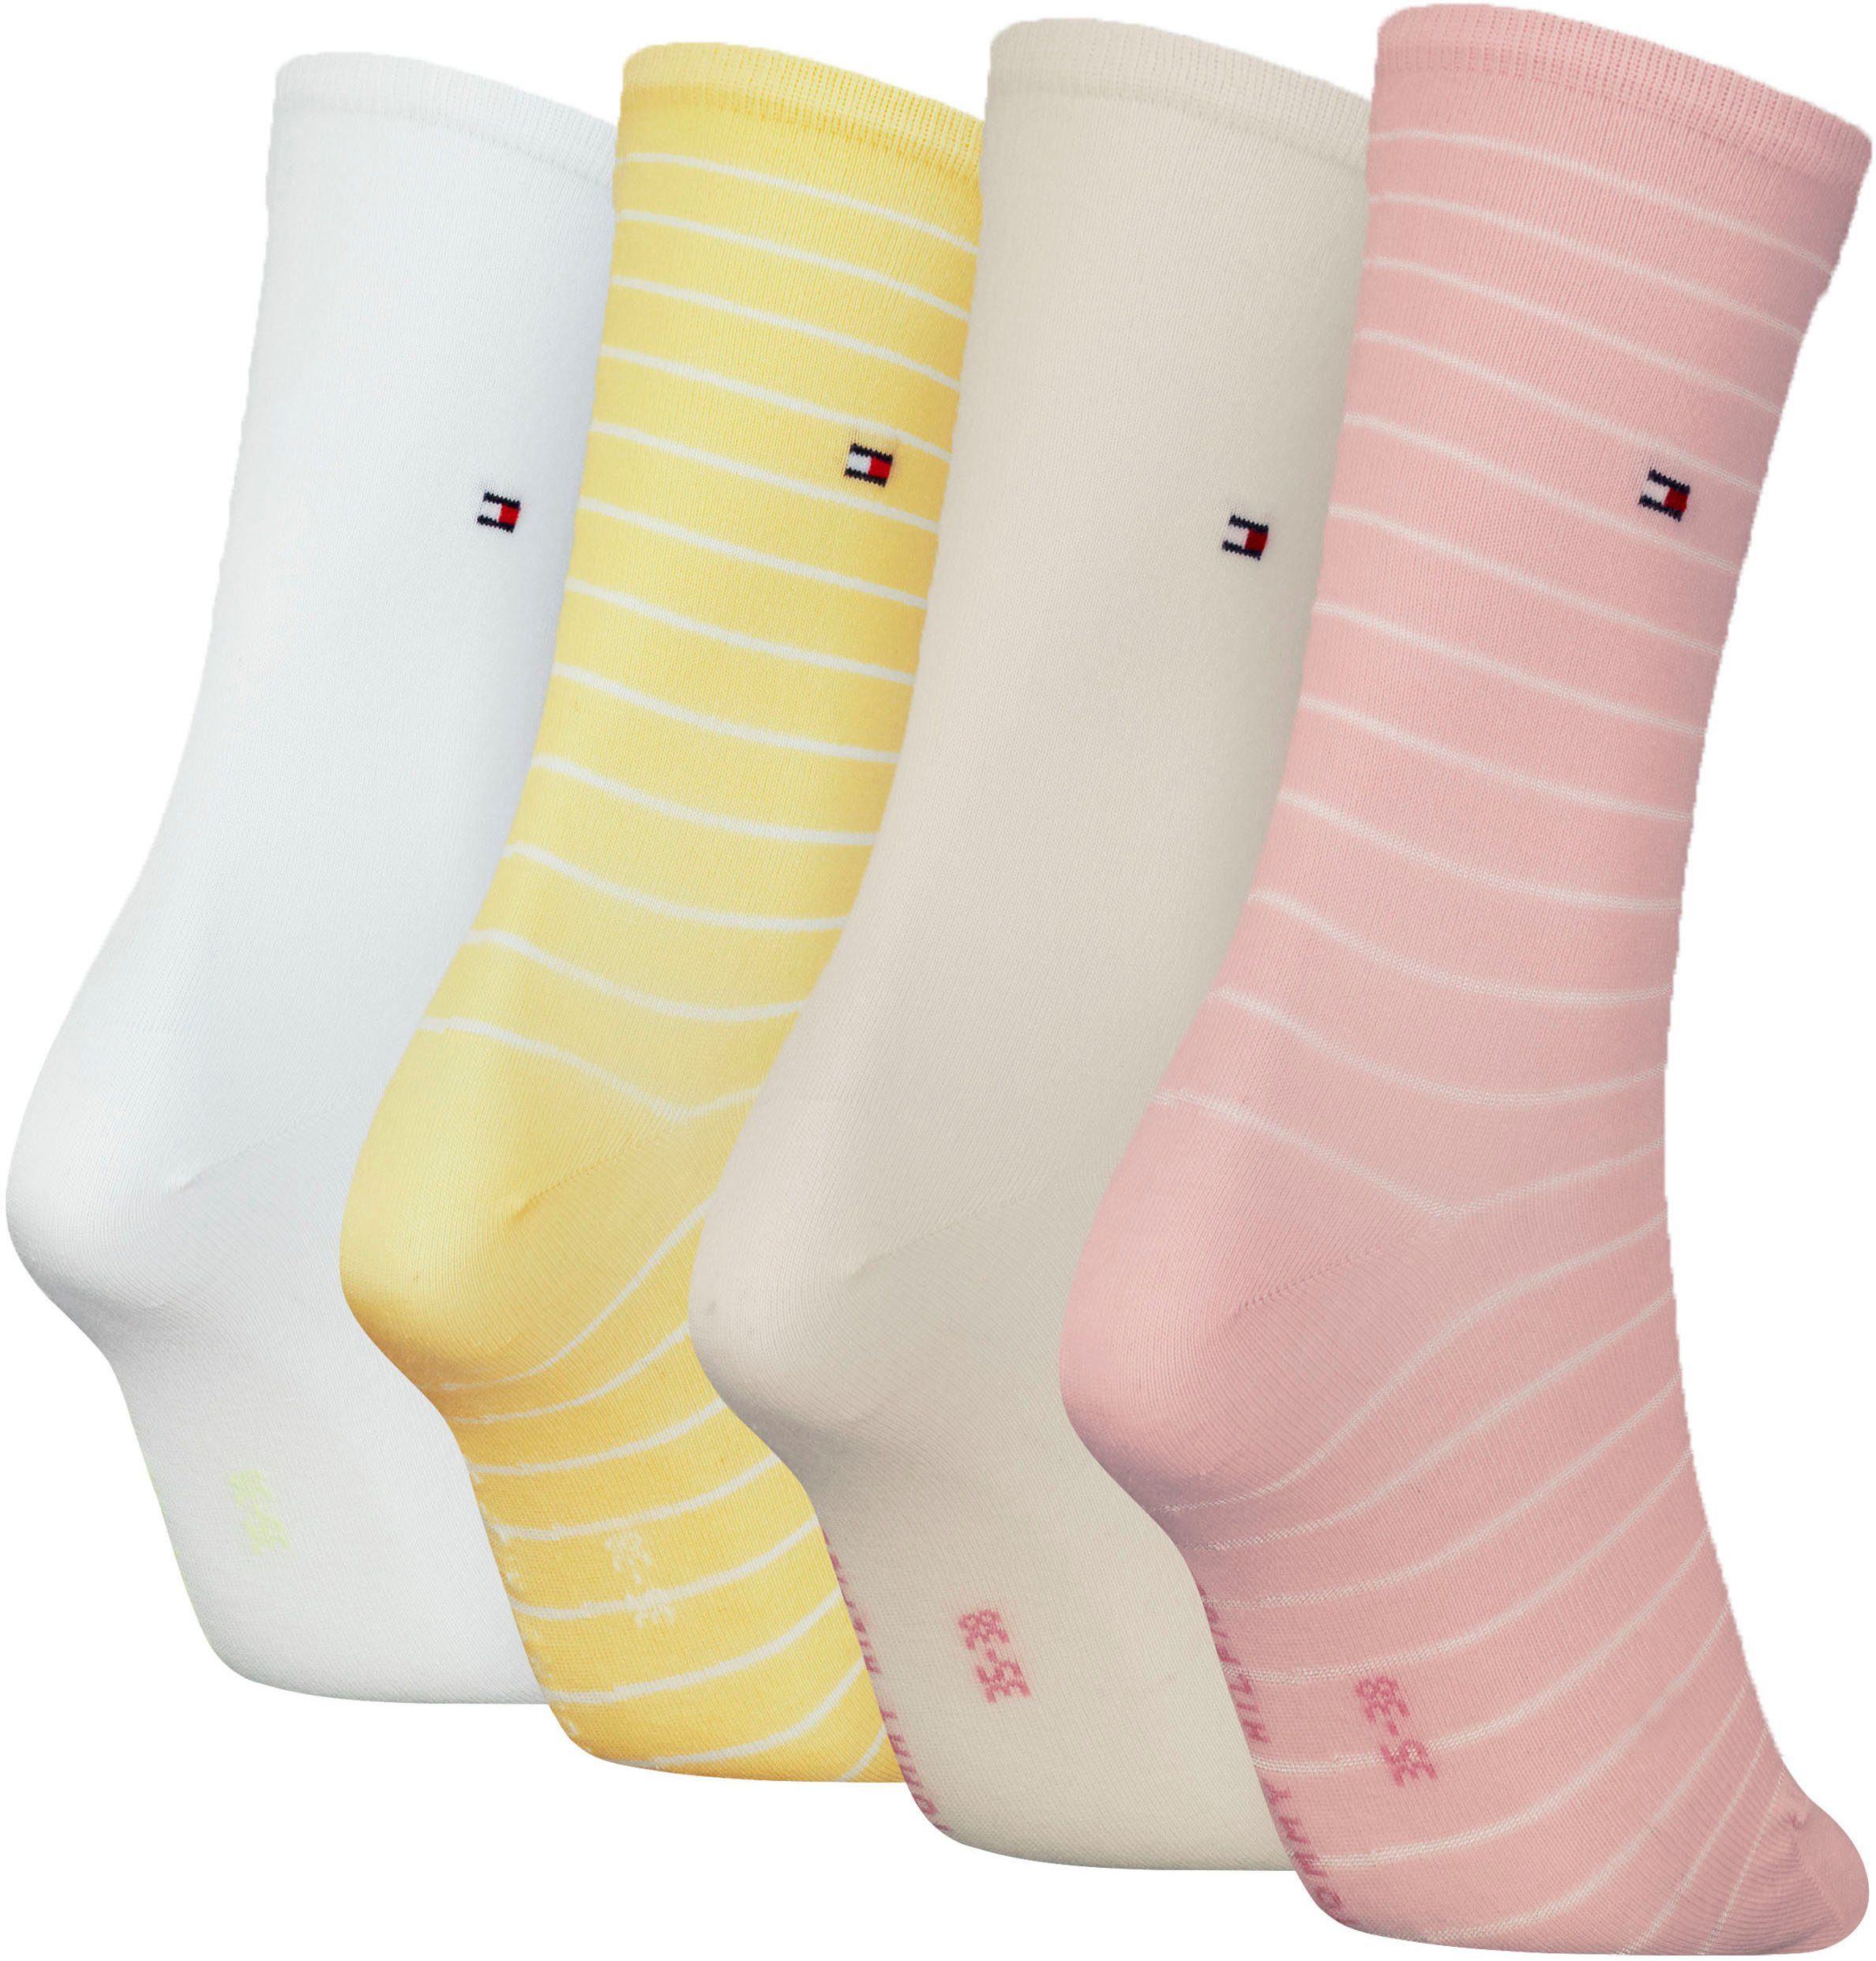 Socken pink-yellow-white raffiniertes Hilfiger Tommy klassisches Streifendesign